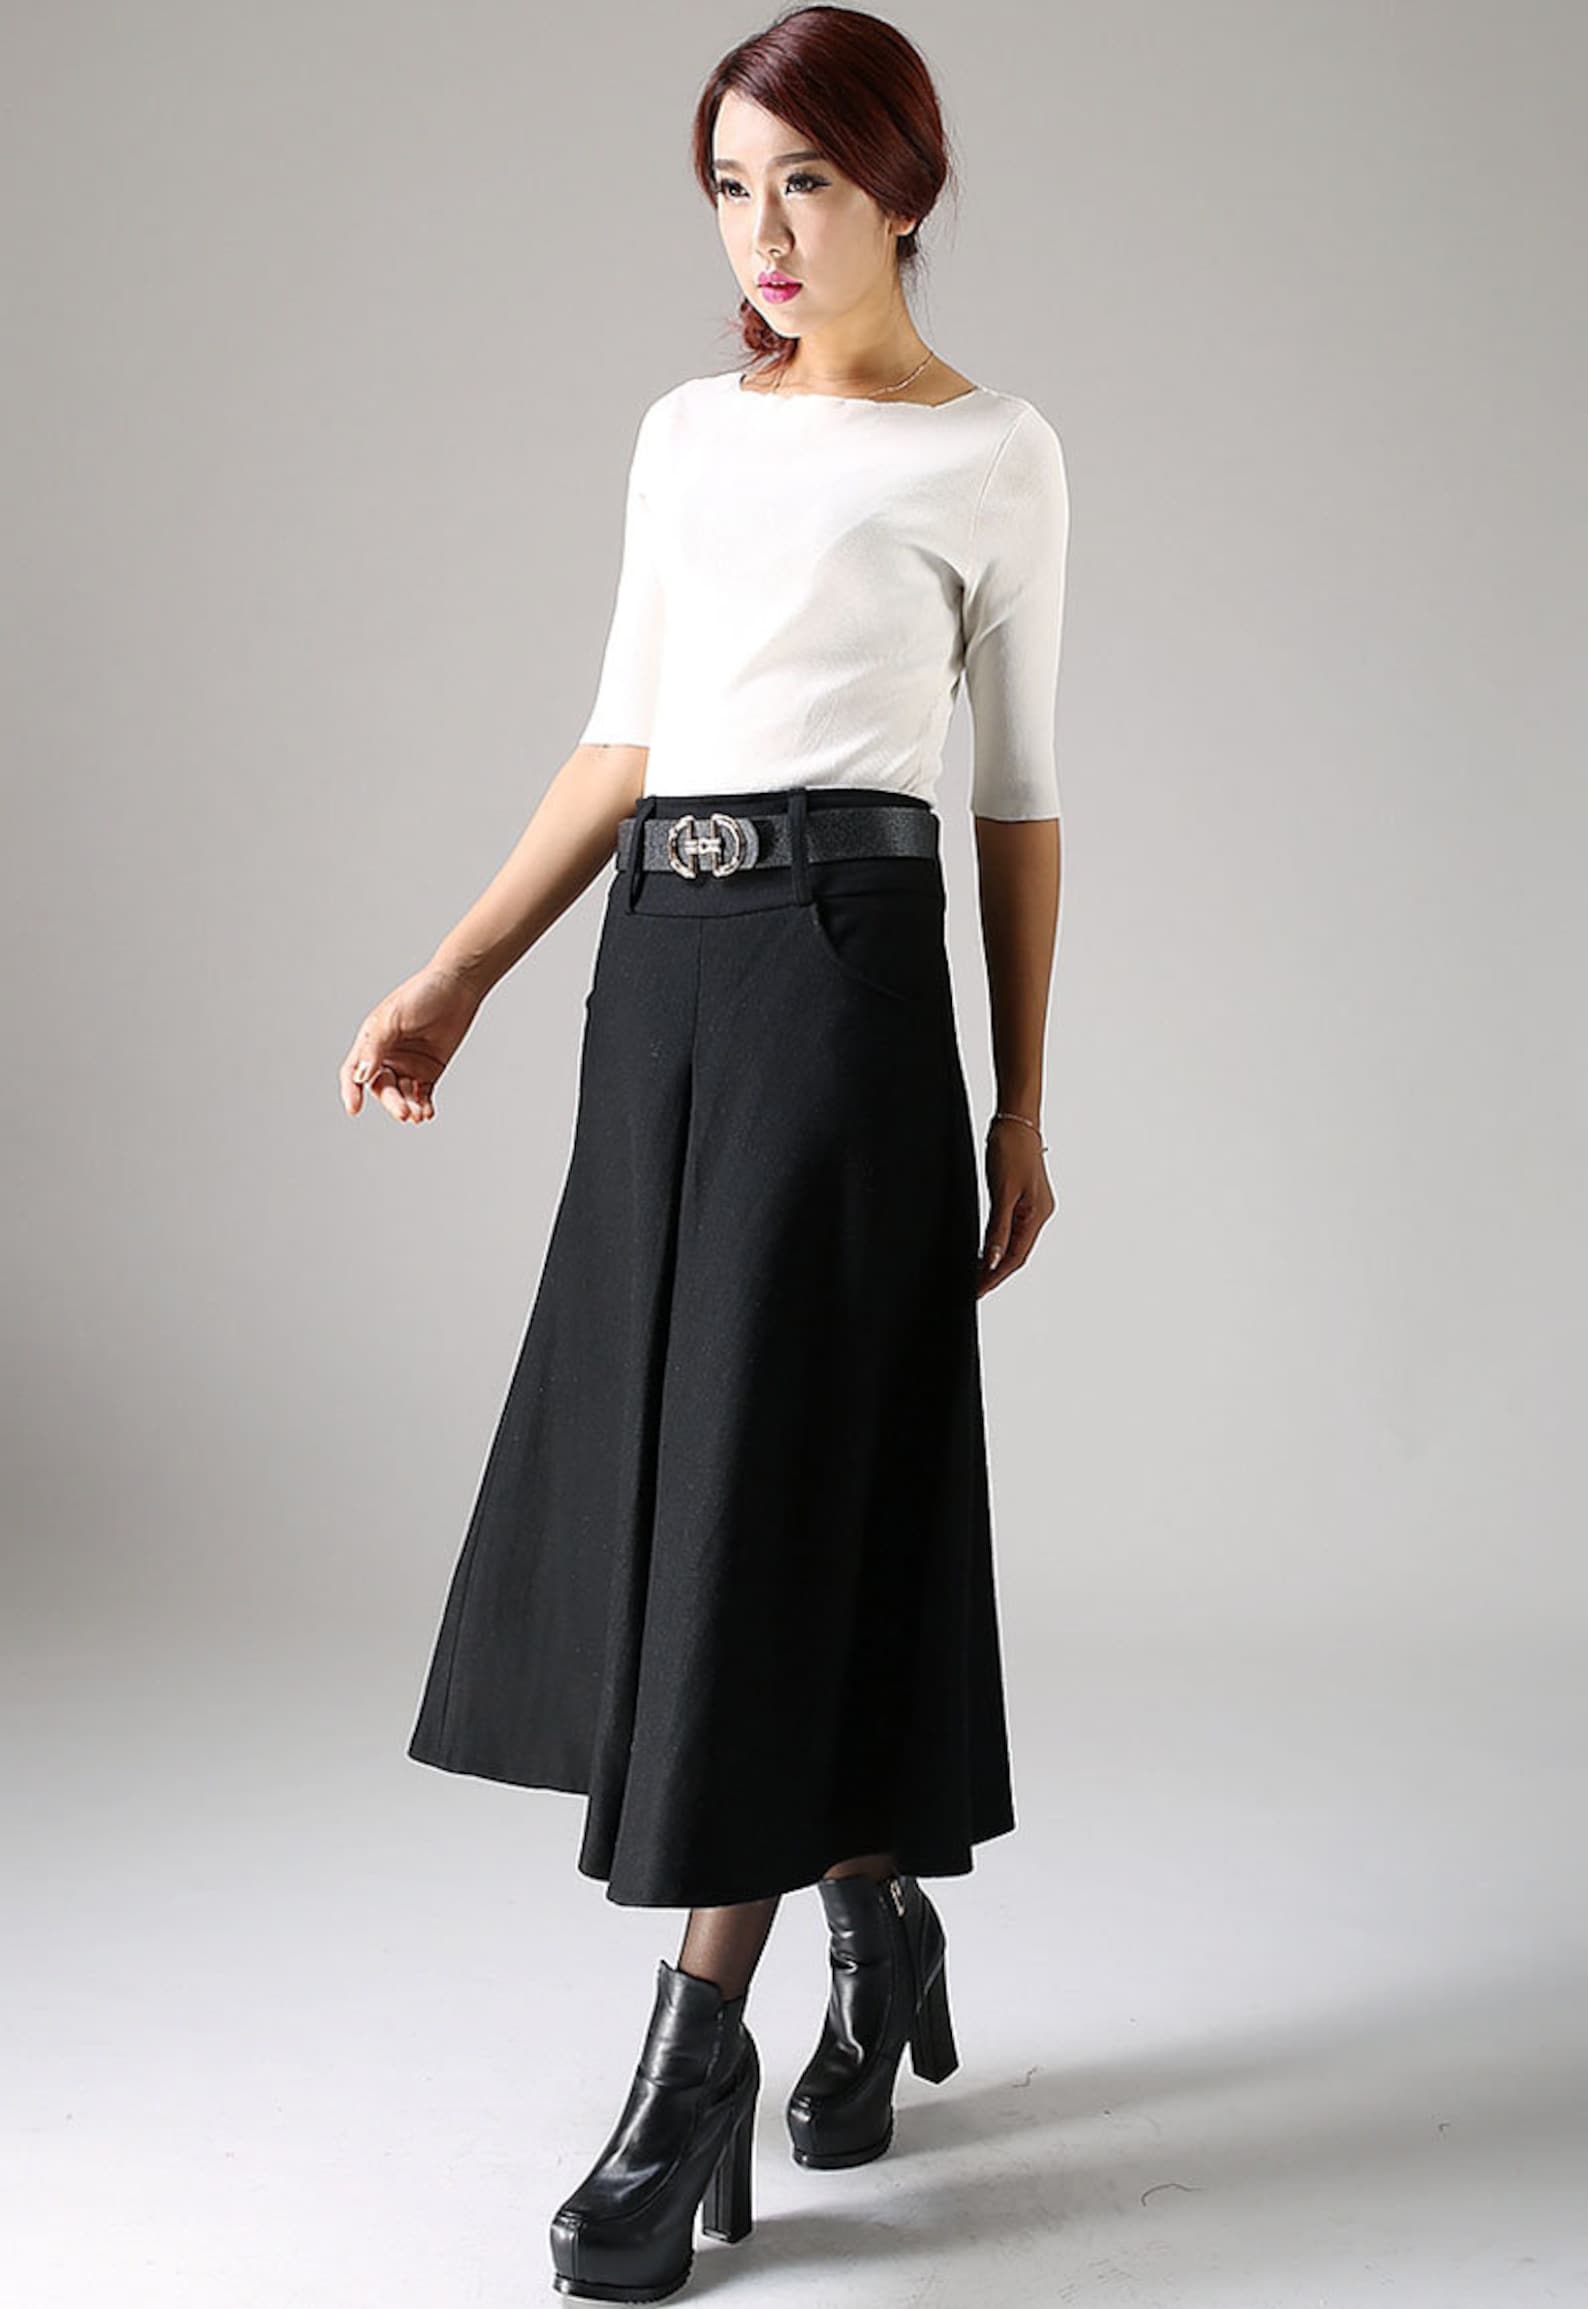 A Line Midi Skirt Wool Skirt Black Skirt Winter Skirt | Etsy